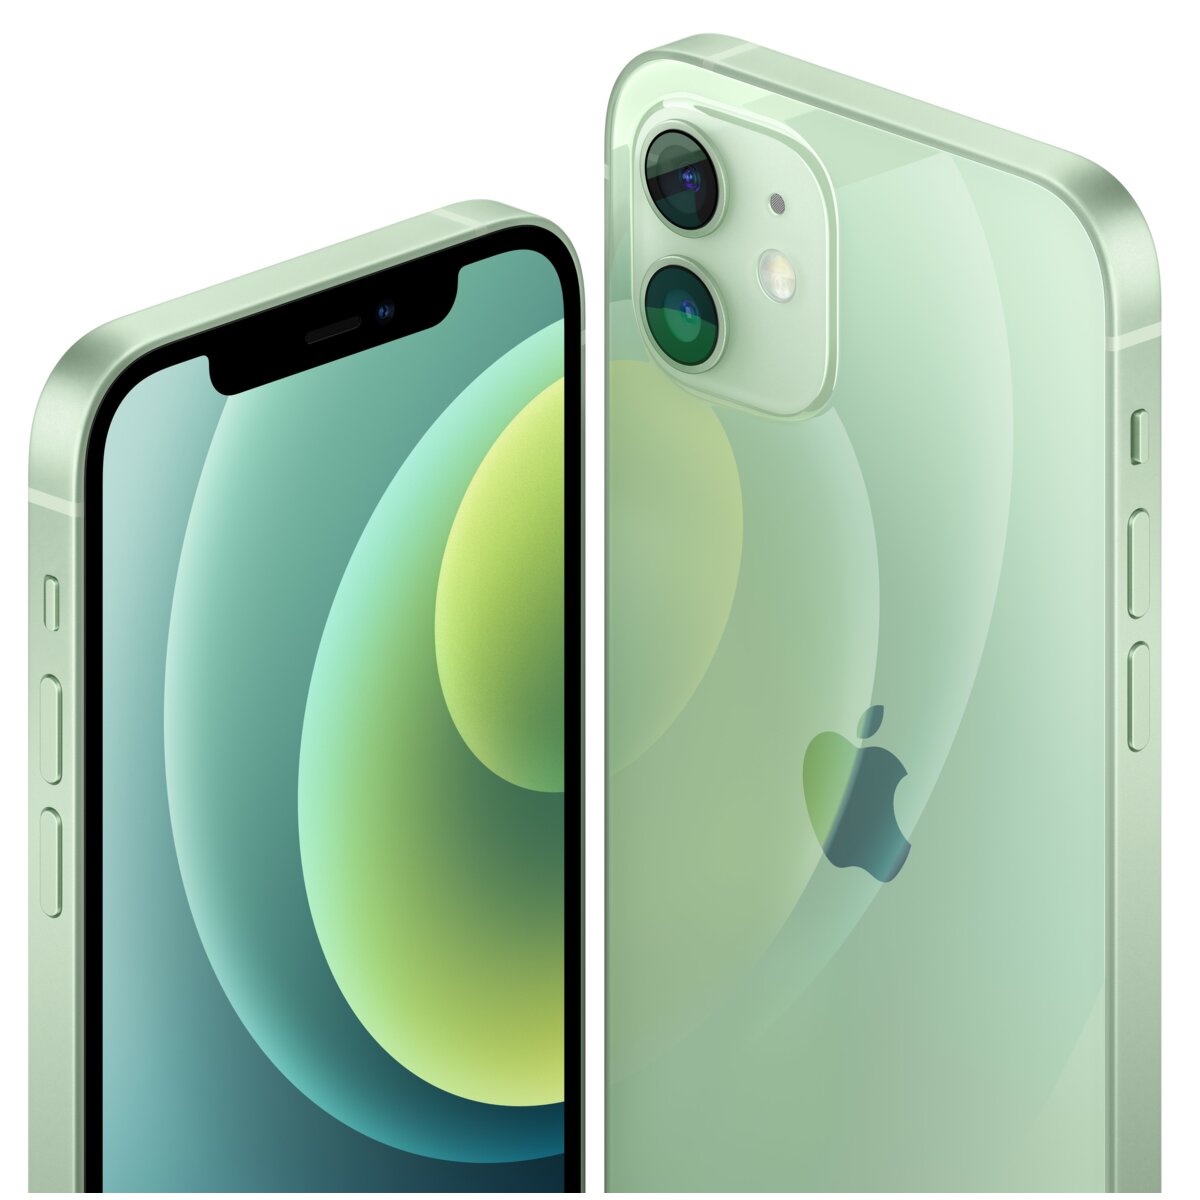 APPLE iPhone 12 mini 64GB Zielony 5G Smartfon ceny i opinie w Media